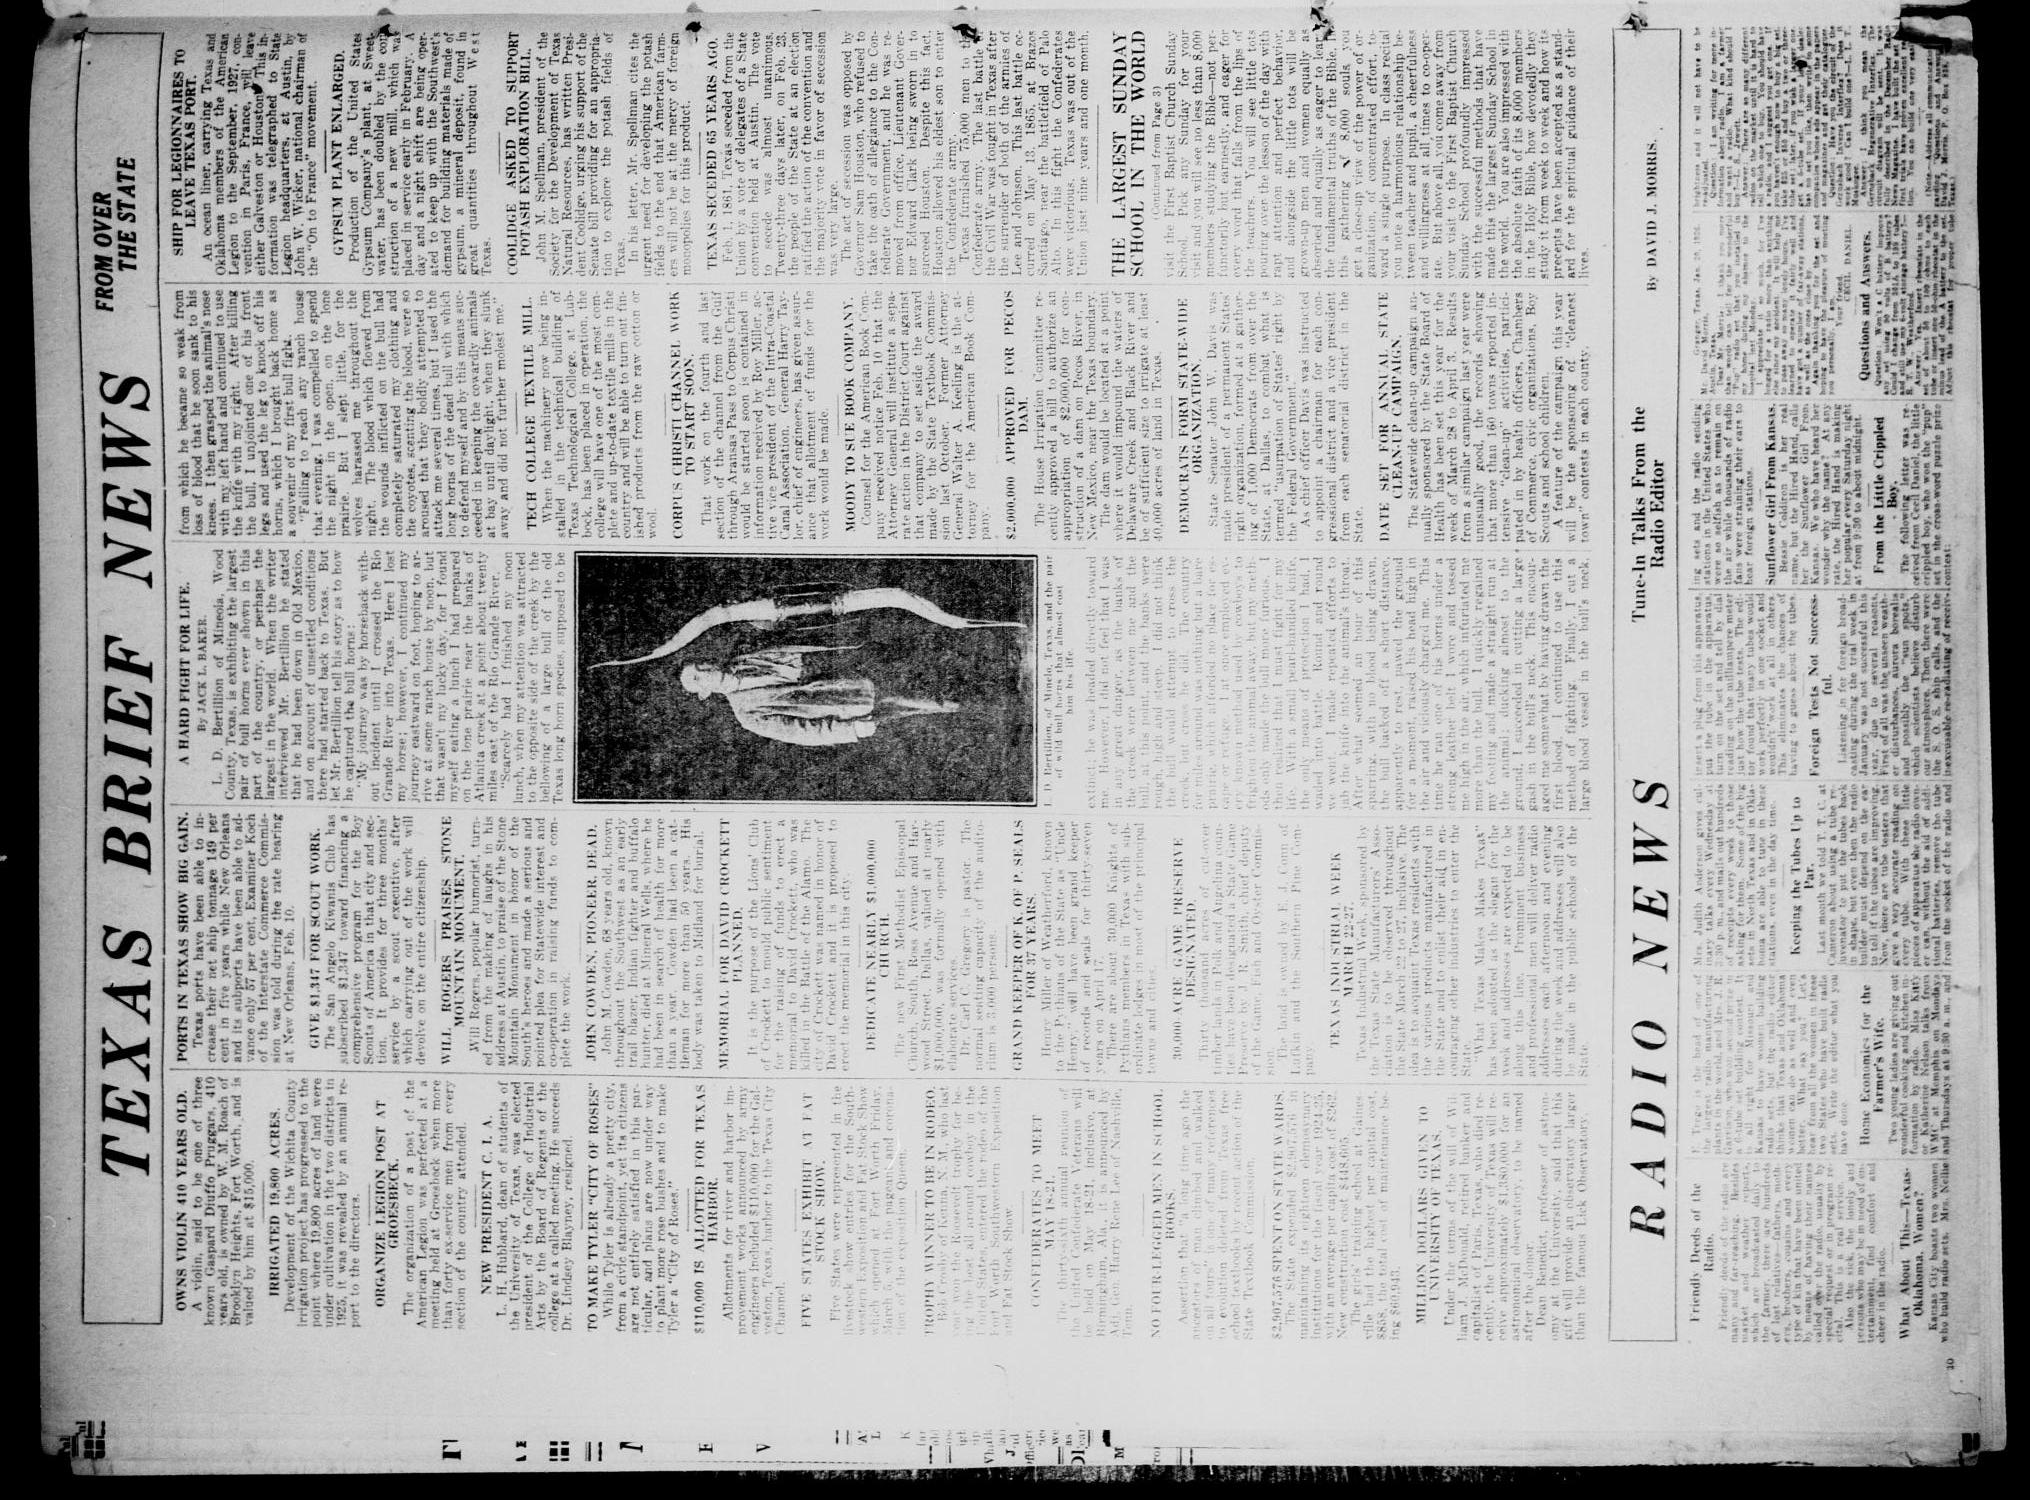 The Tulia Herald (Tulia, Tex), Vol. 17, No. 11, Ed. 1, Thursday, March 11, 1926
                                                
                                                    28
                                                